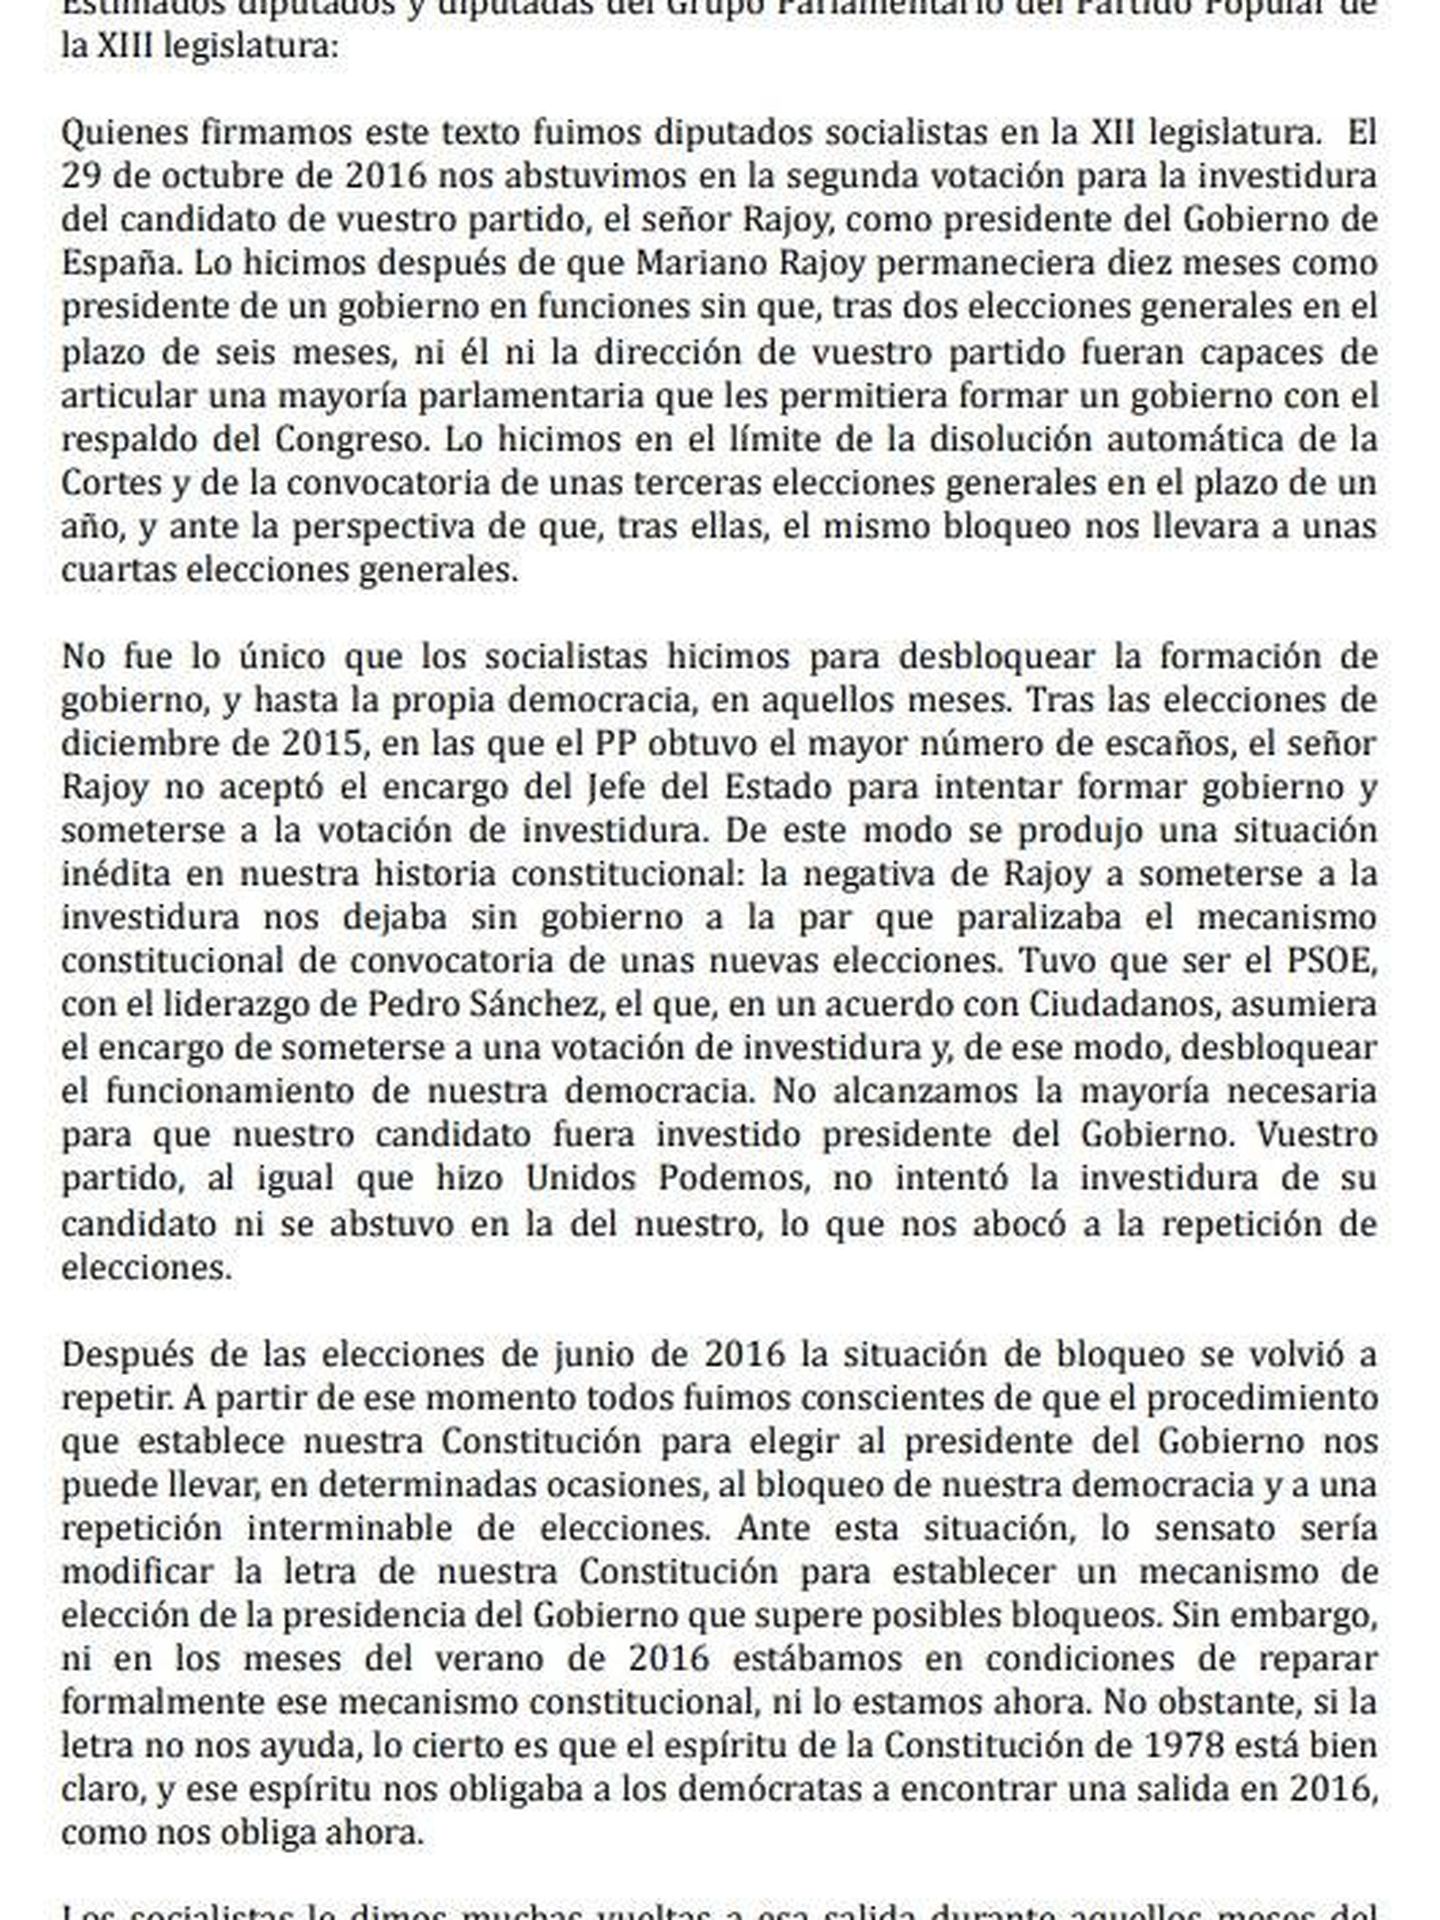 Consulte aquí en PDF la carta de los diputados socialistas que se abstuvieron en 2016 con Mariano Rajoy y que piden al PP que devuelva el gesto. 